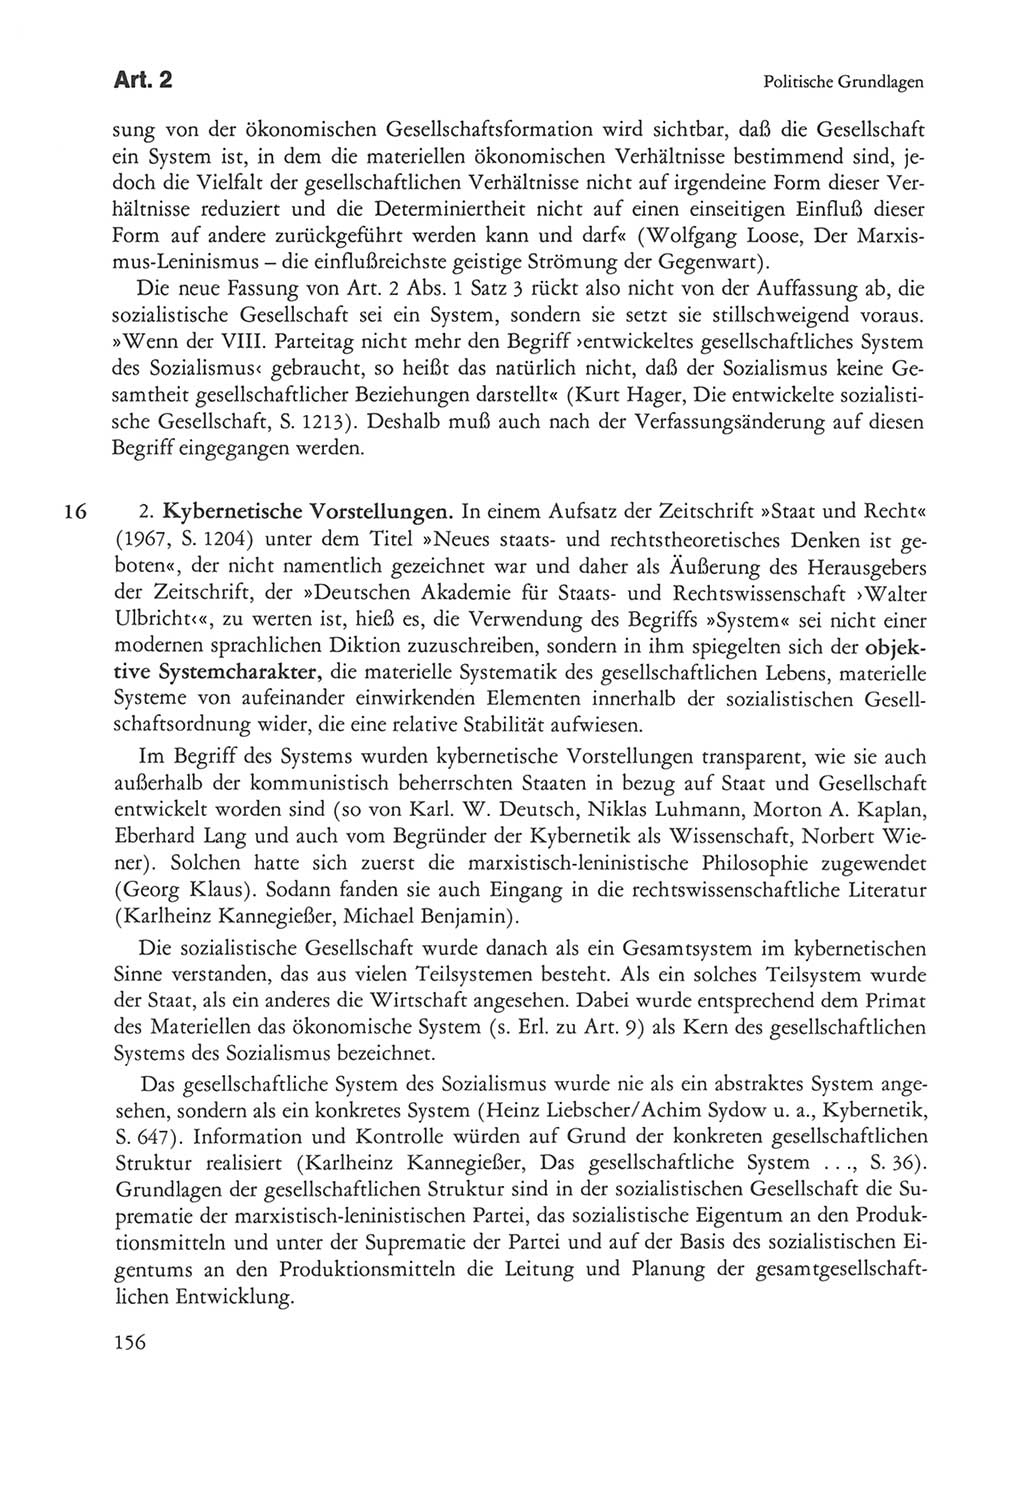 Die sozialistische Verfassung der Deutschen Demokratischen Republik (DDR), Kommentar mit einem Nachtrag 1997, Seite 156 (Soz. Verf. DDR Komm. Nachtr. 1997, S. 156)